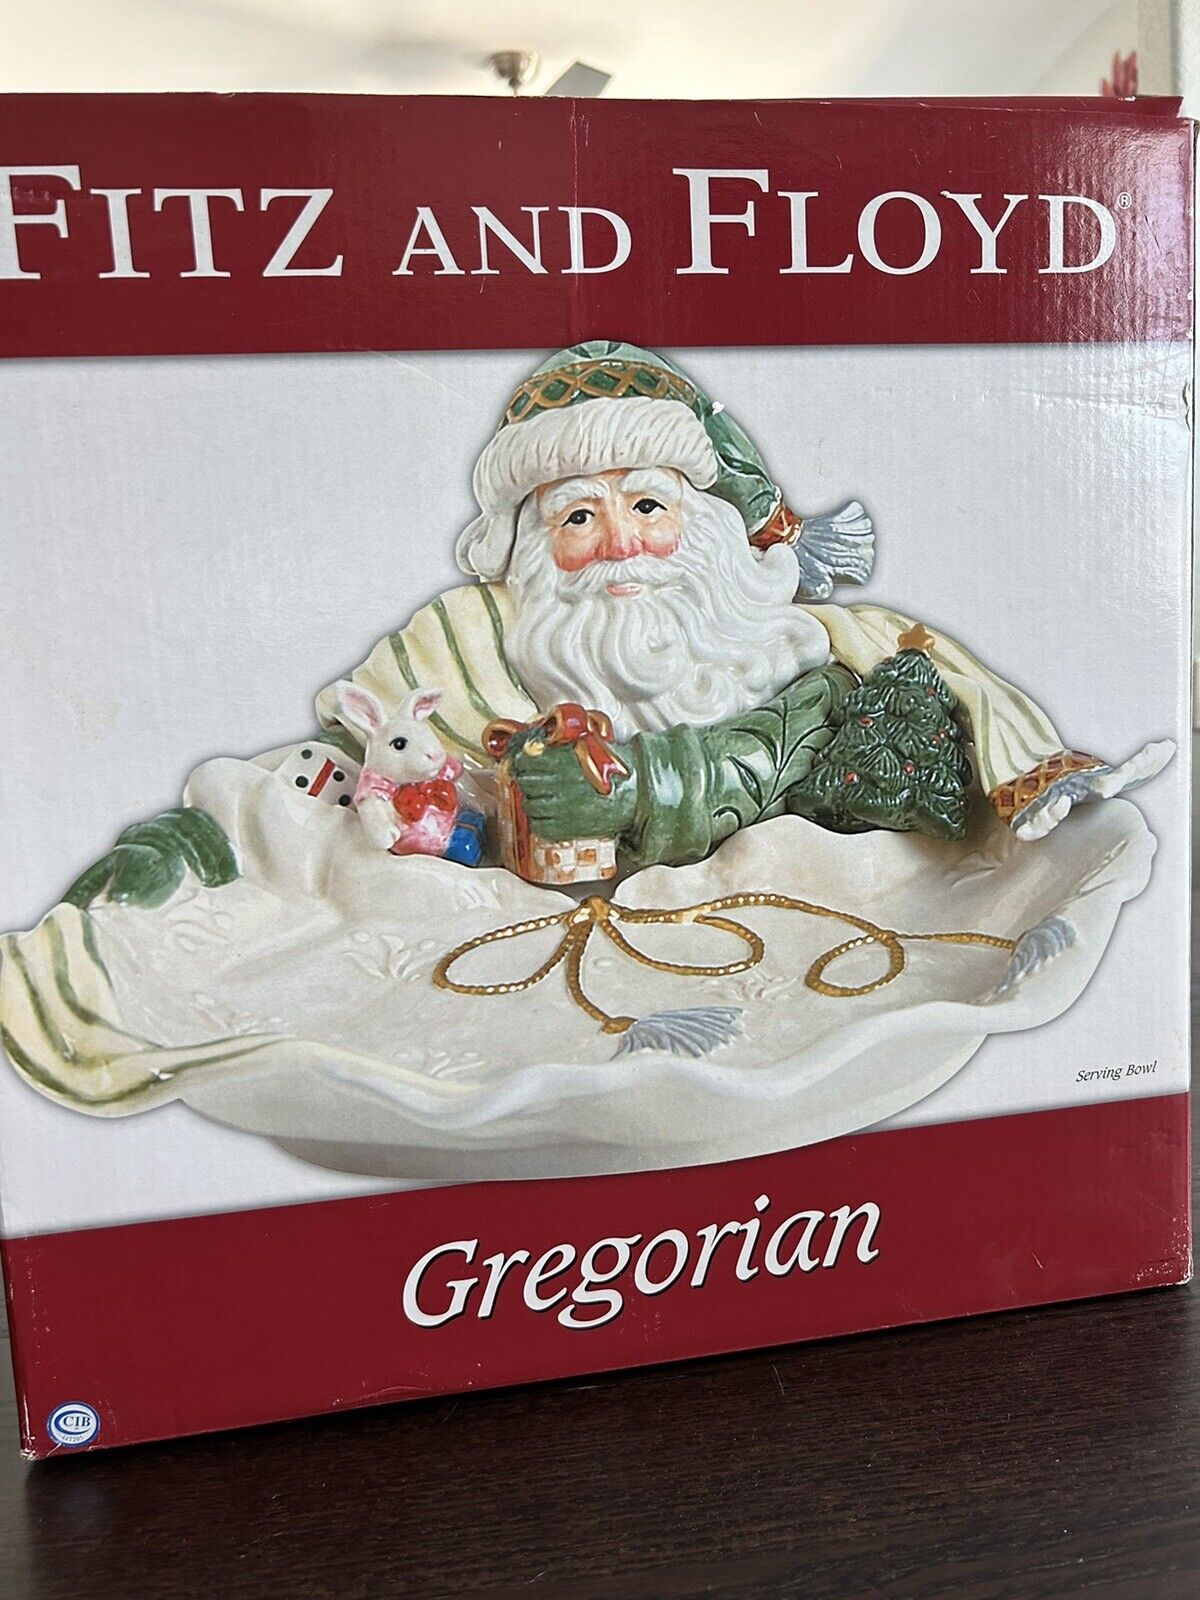 Fitz and Floyd Gregorian Santa Serving Bowl & Original Box Christmas Centerpiece